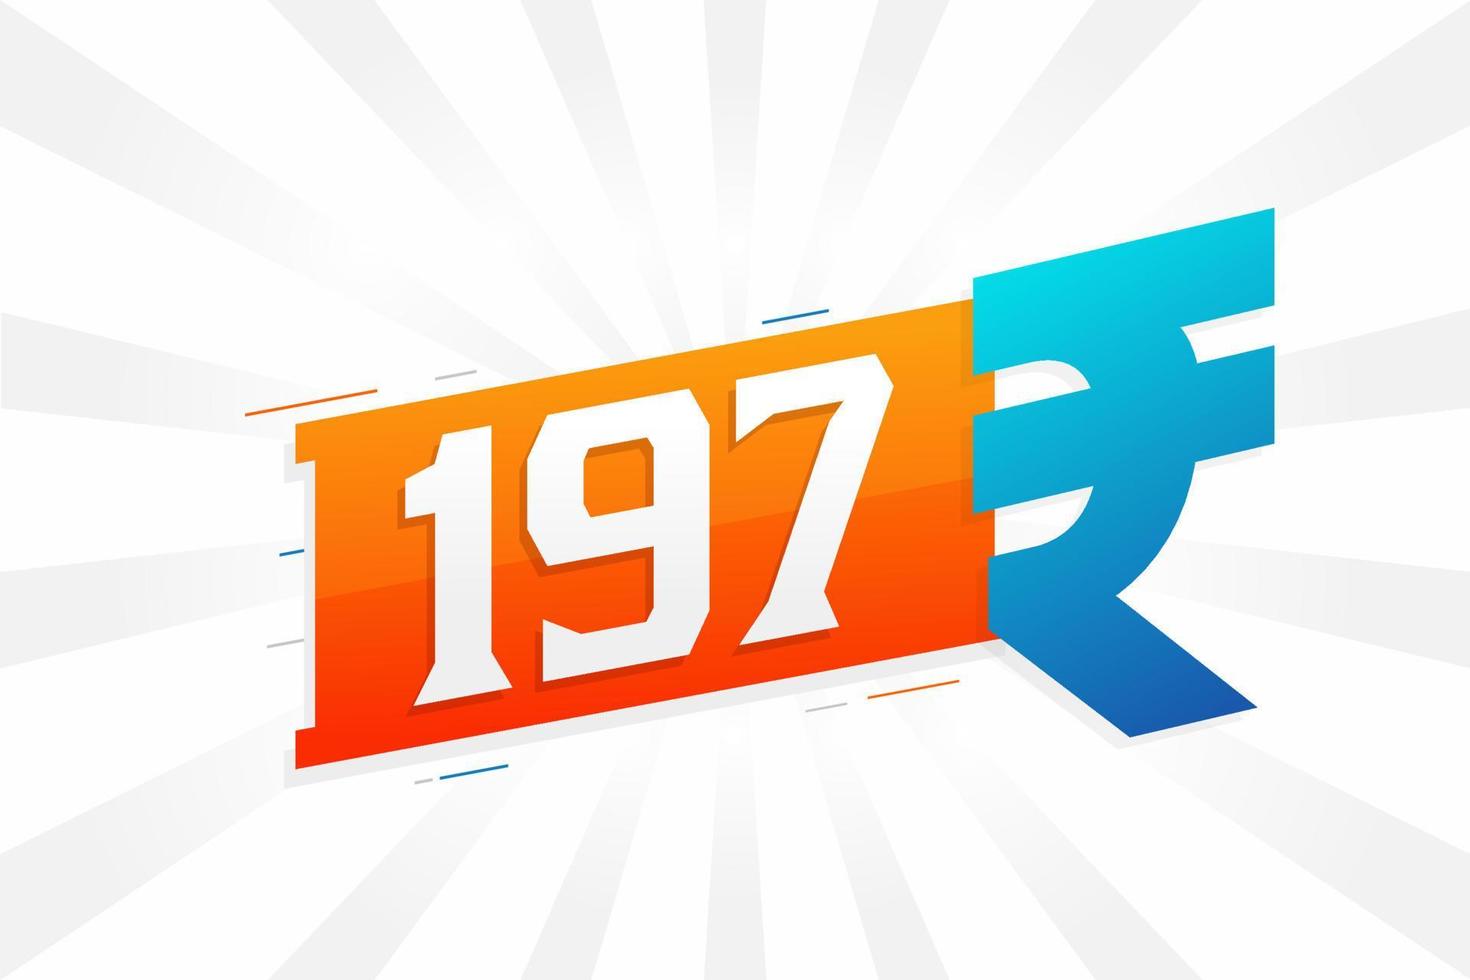 Imagen de vector de texto en negrita de símbolo de 197 rupias. 197 rupia india signo de moneda ilustración vectorial